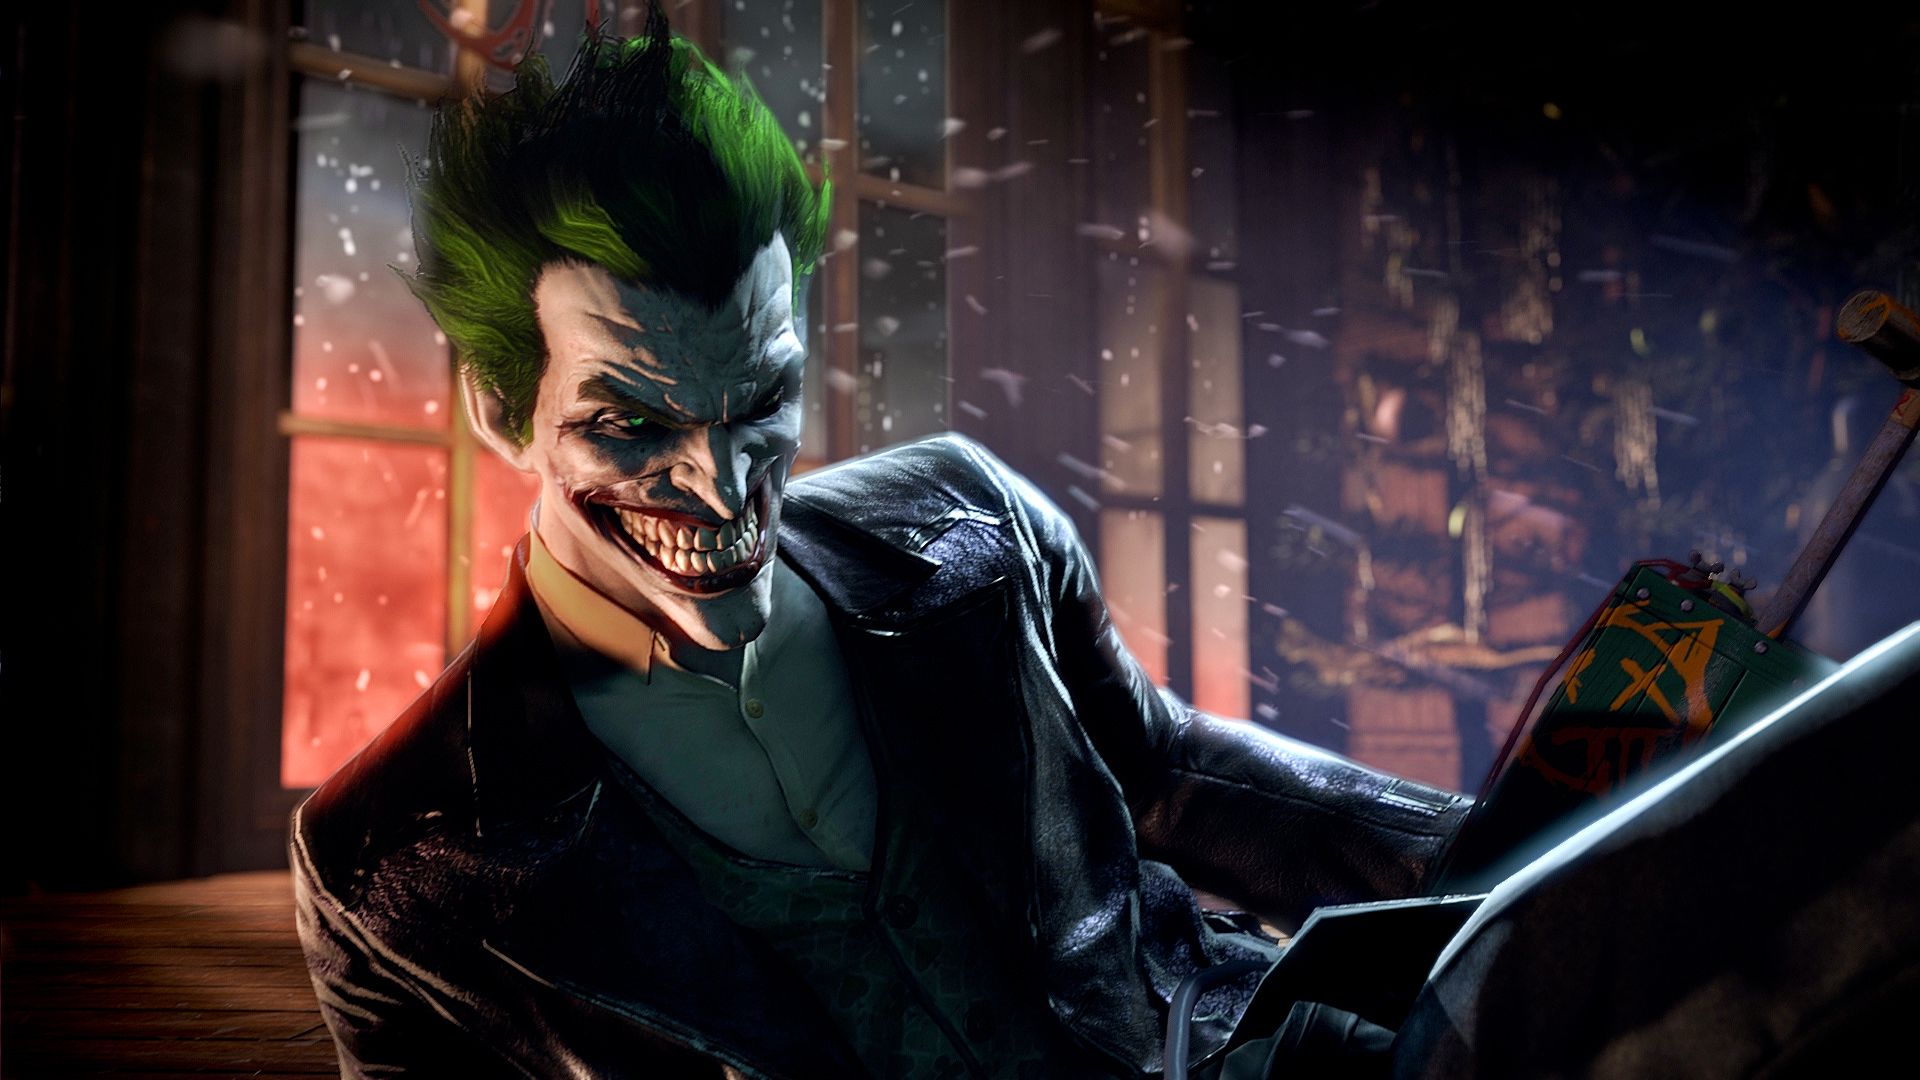 New 'Batman: Arkham Origins' screenshots give first look at the Joker